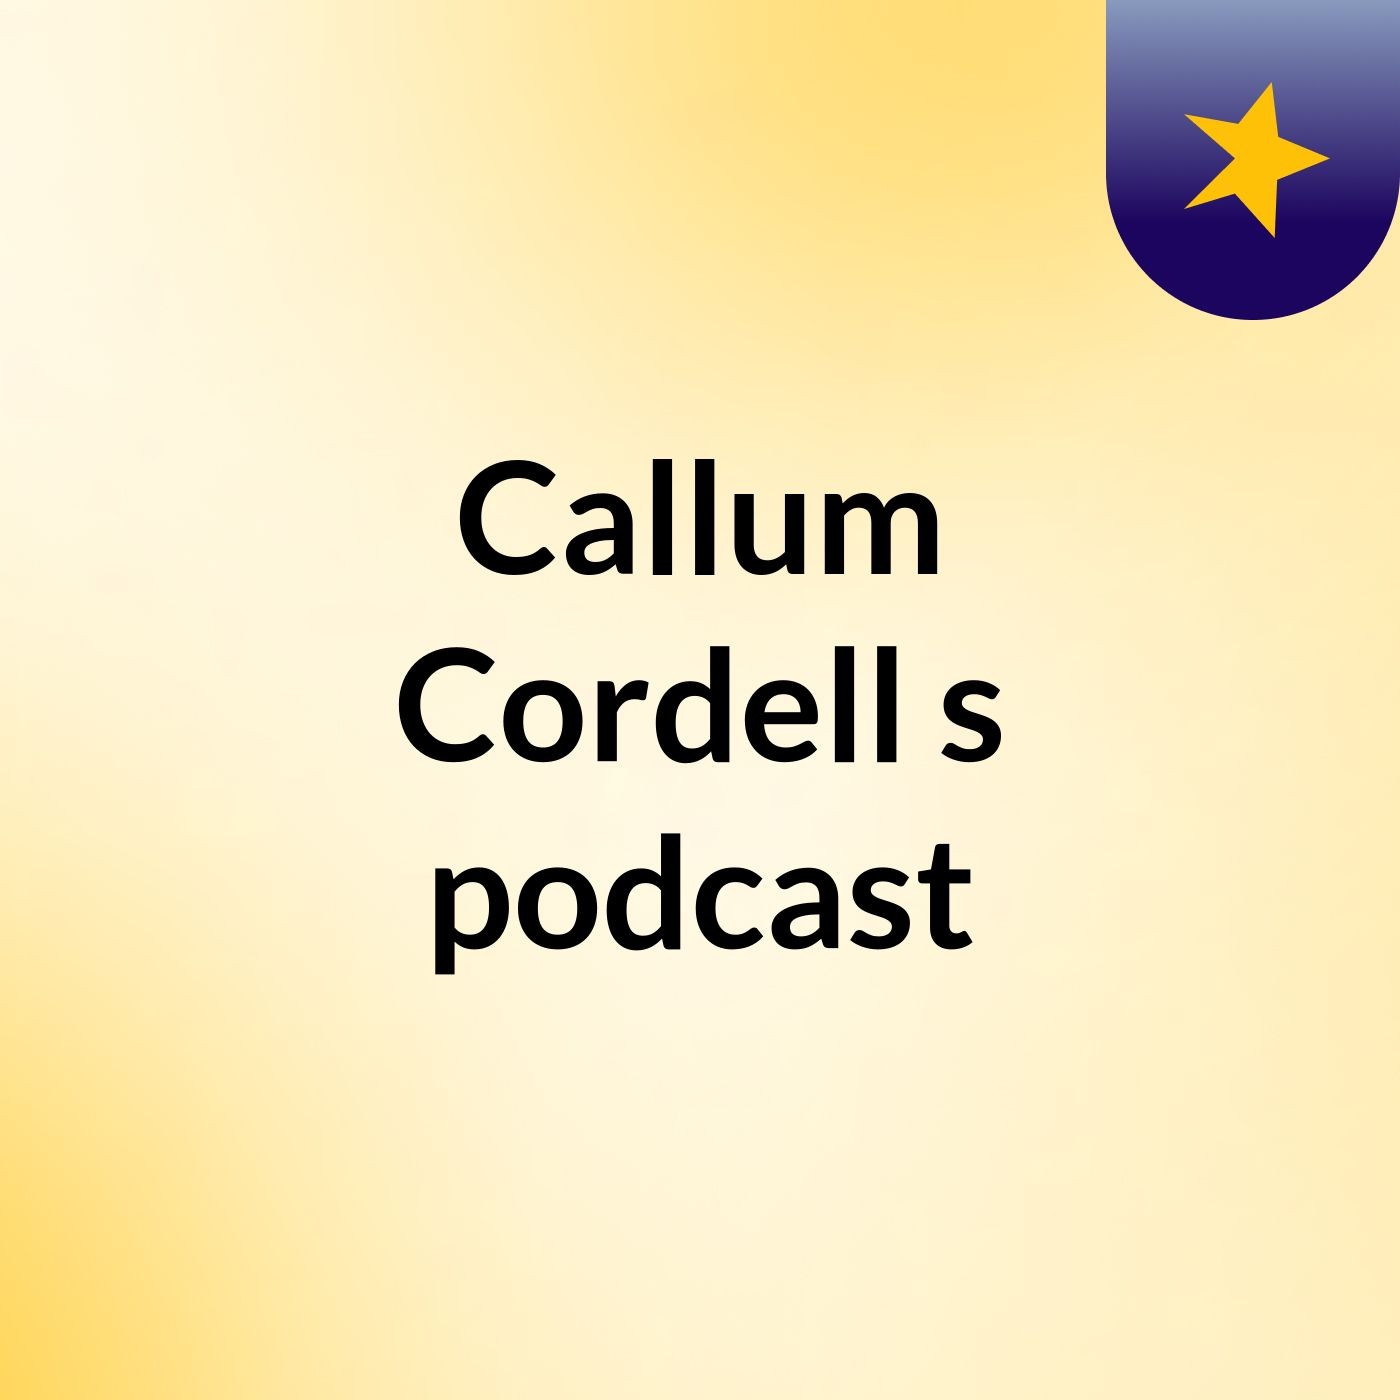 Callum Cordell's podcast